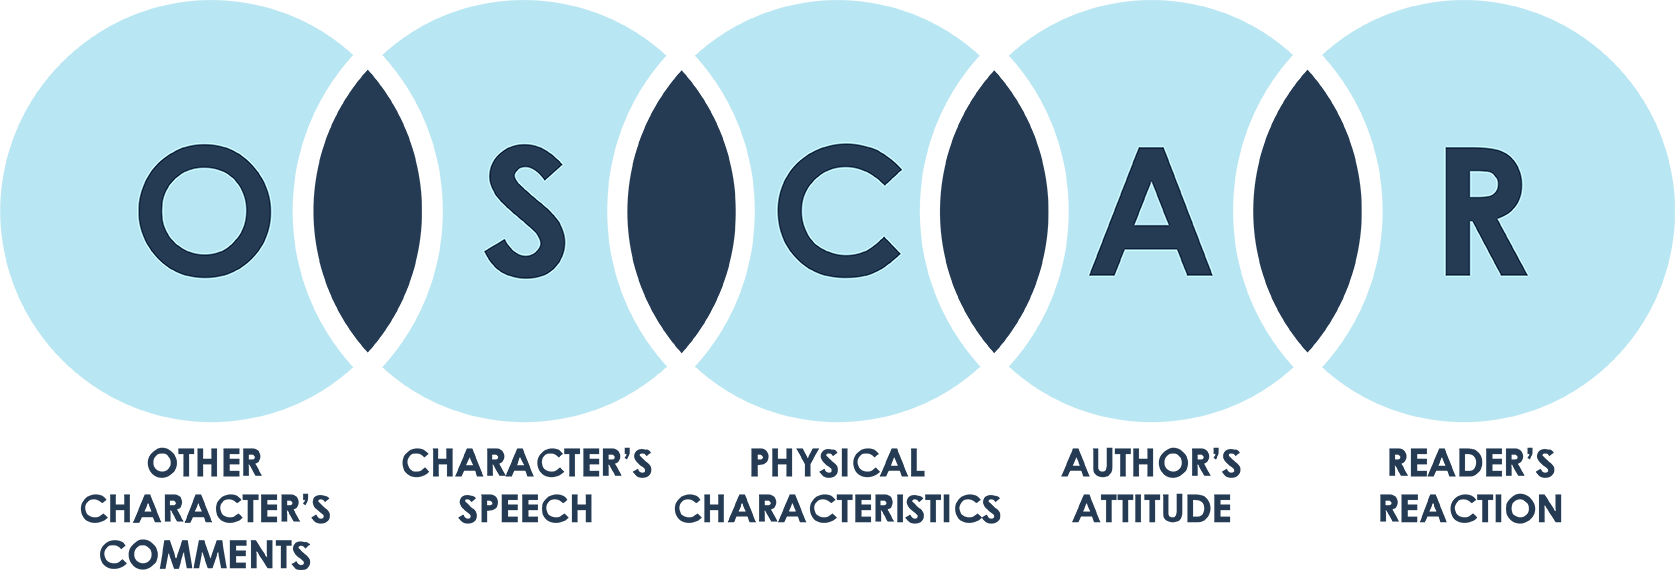 Analýza Znaků OSCAR